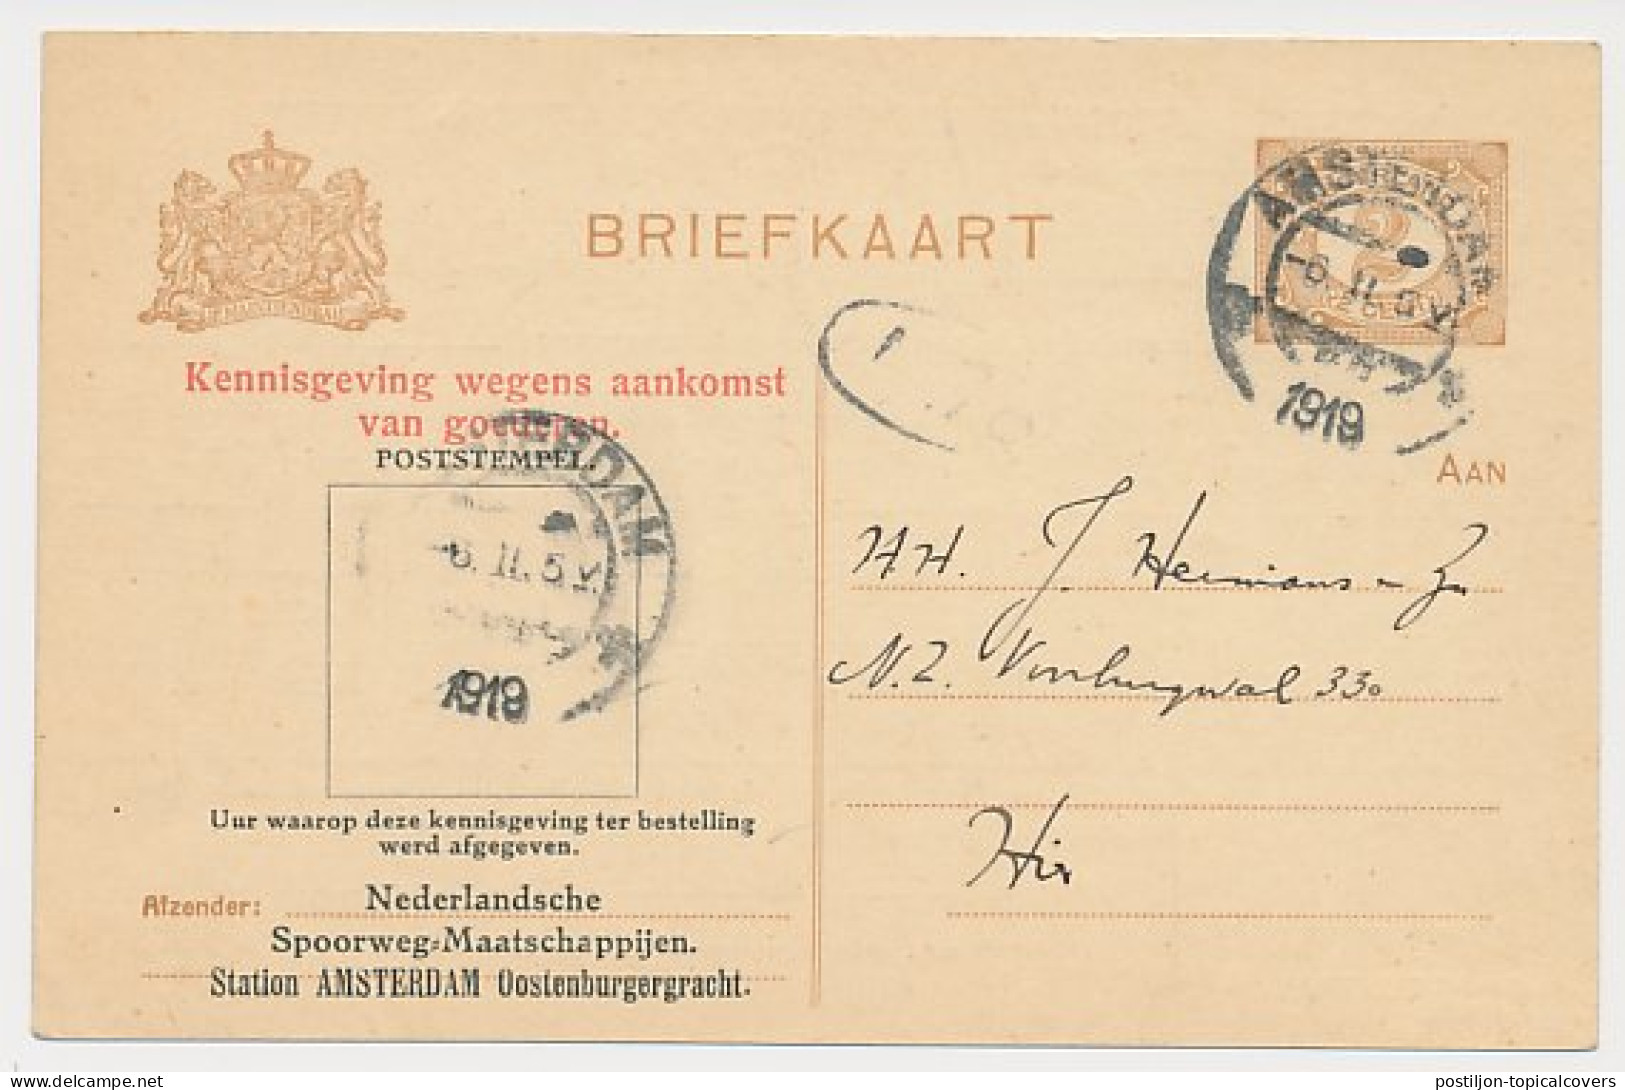 Spoorwegbriefkaart G. NSM88a-I B - Locaal Te Amsterdam 1919 - Postwaardestukken